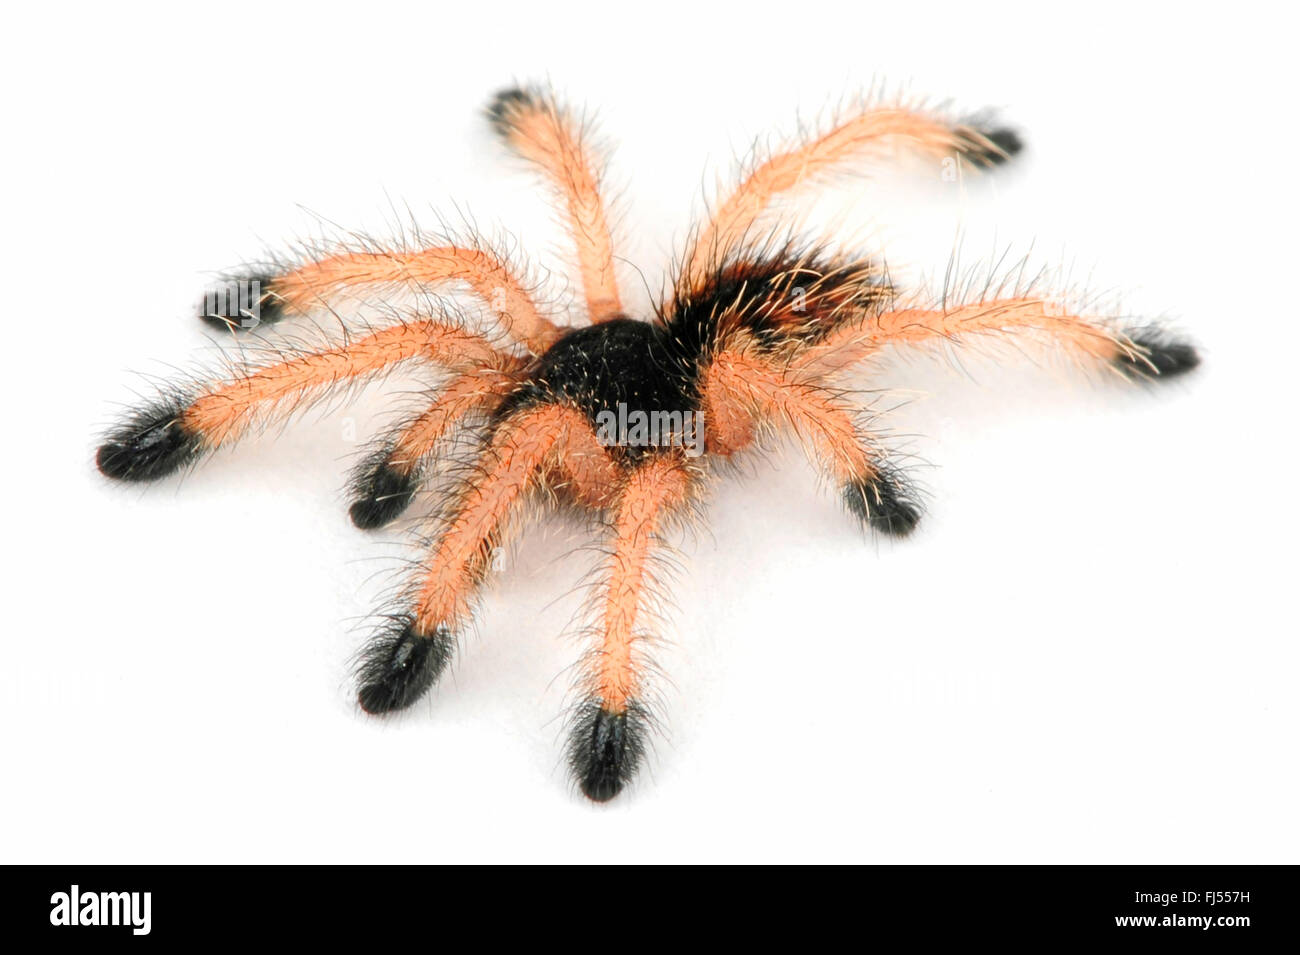 Whitetoe tarantula (Avicularia metallica), cut-out Stock Photo